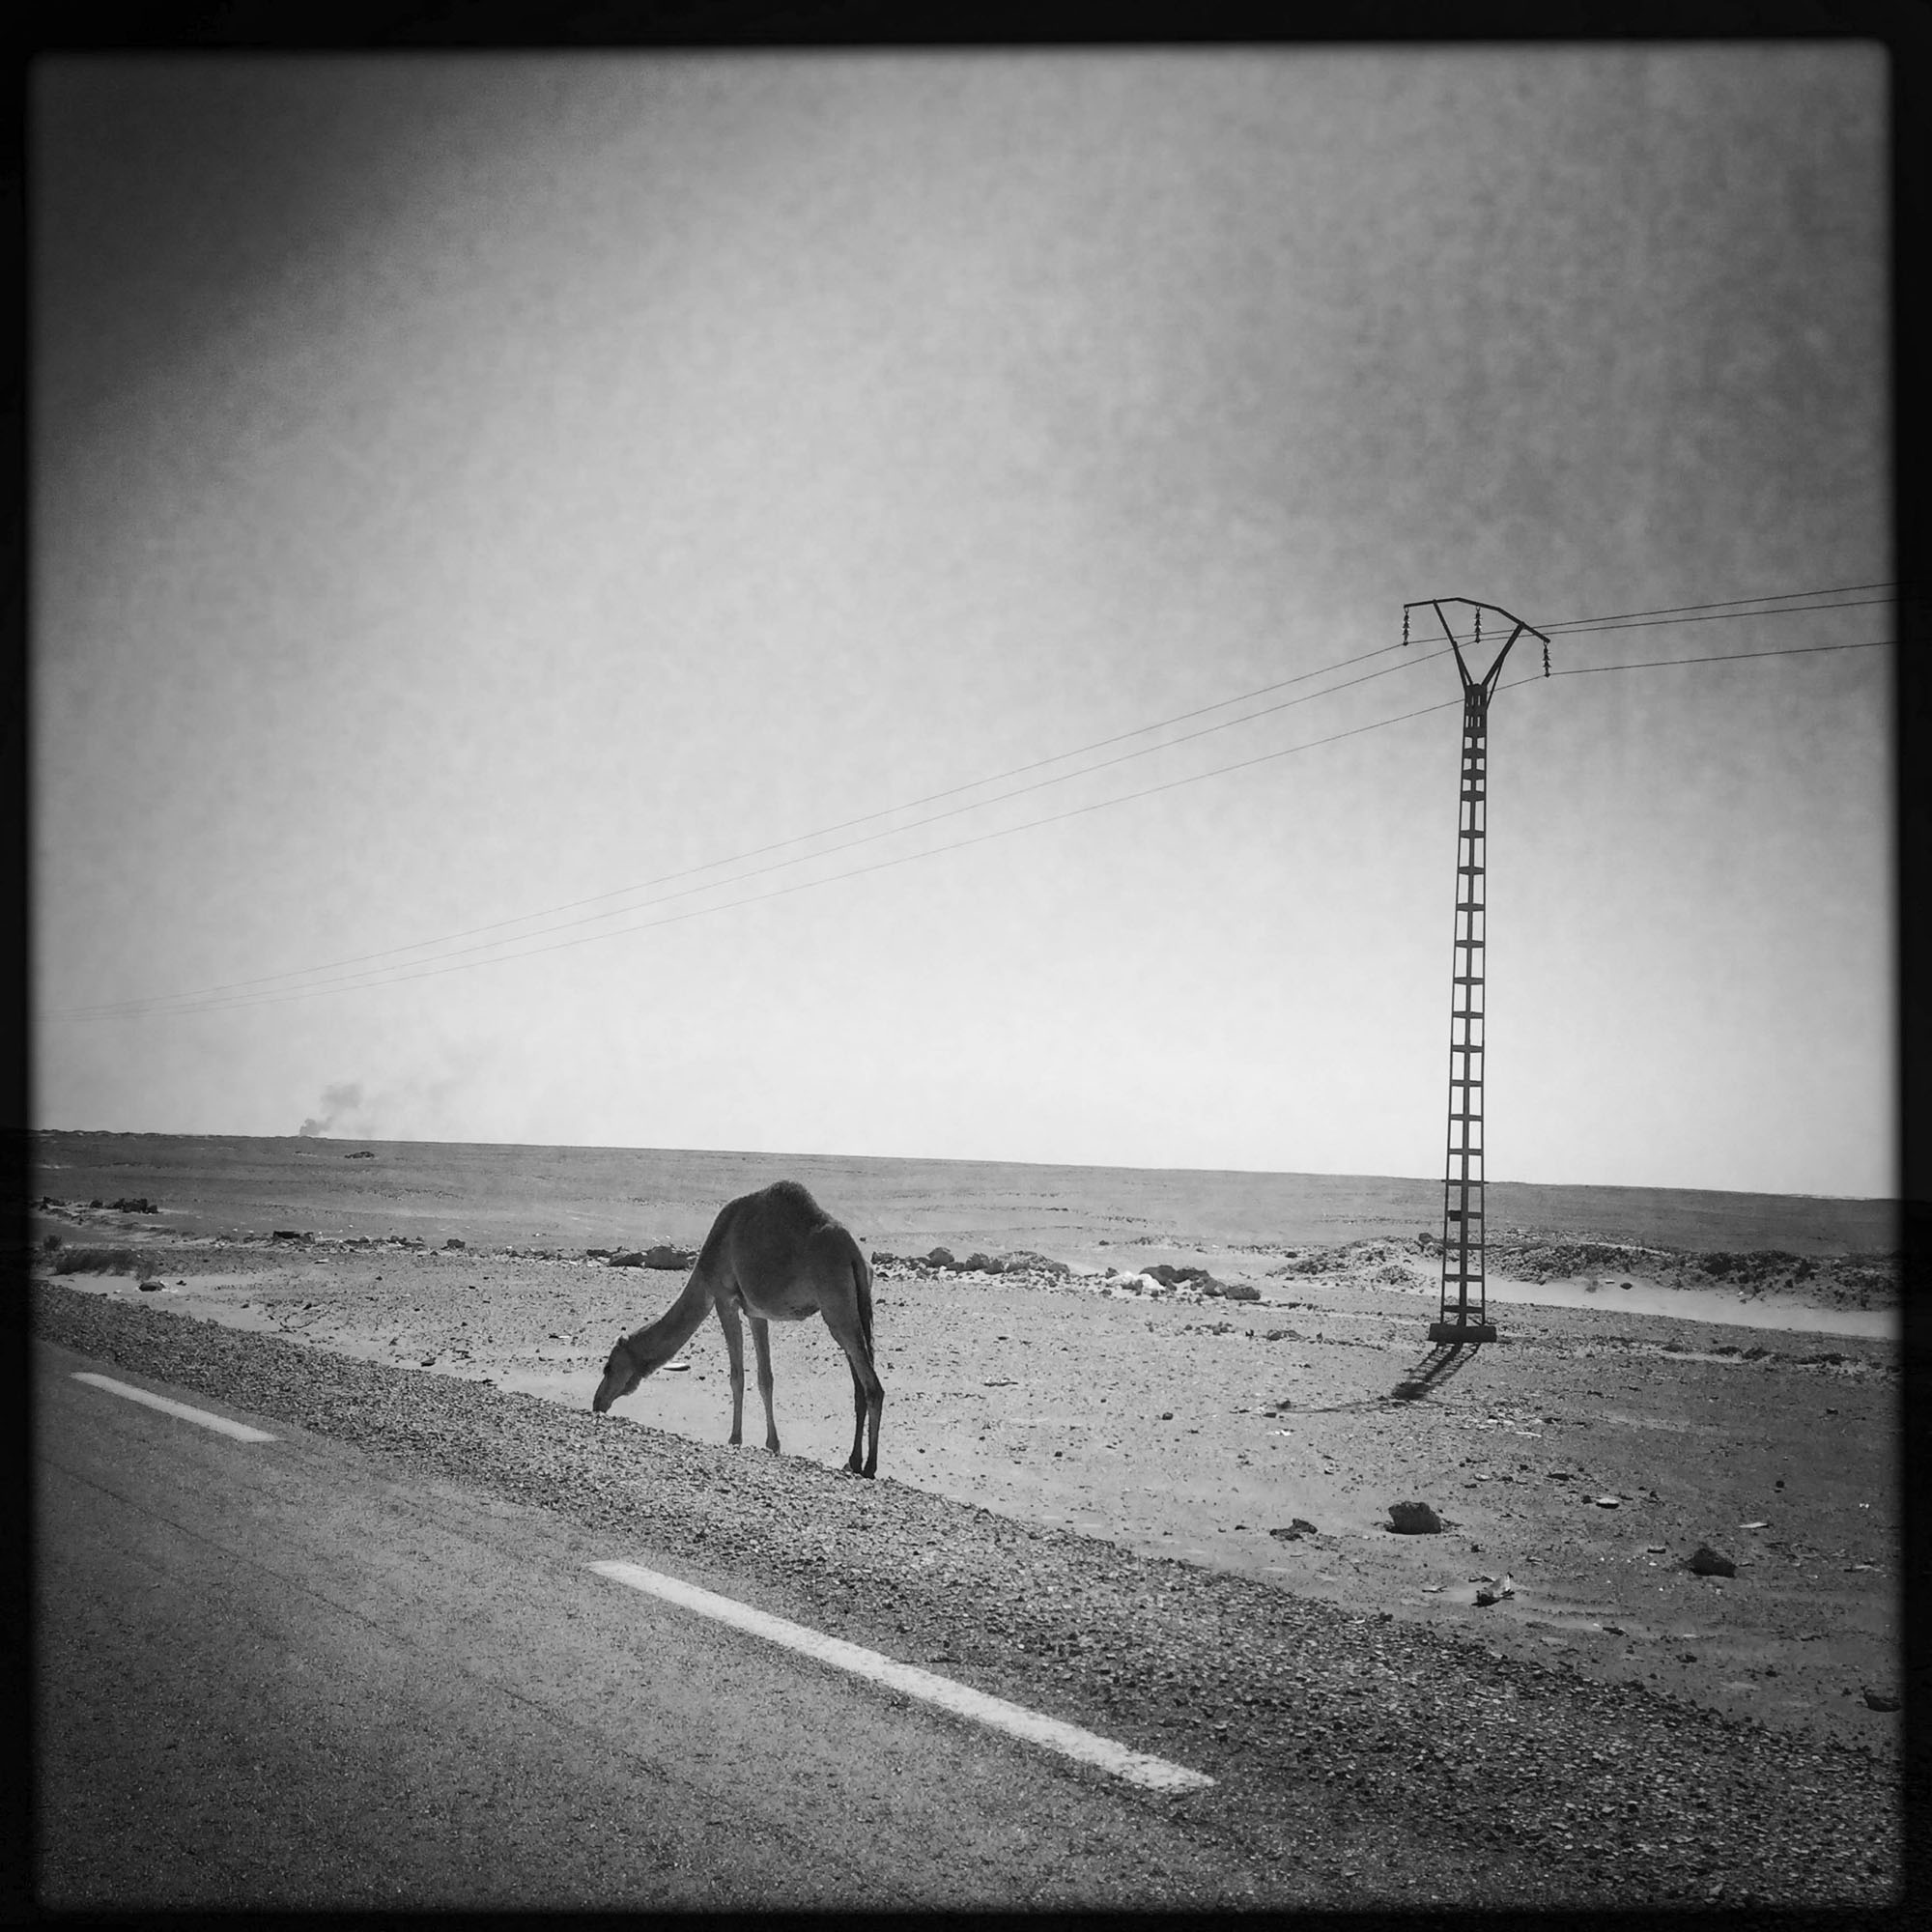 Le long de la route Nationale 49 entre Ghardaïa et Ouargla. 8/02/2016, ALGERIE.